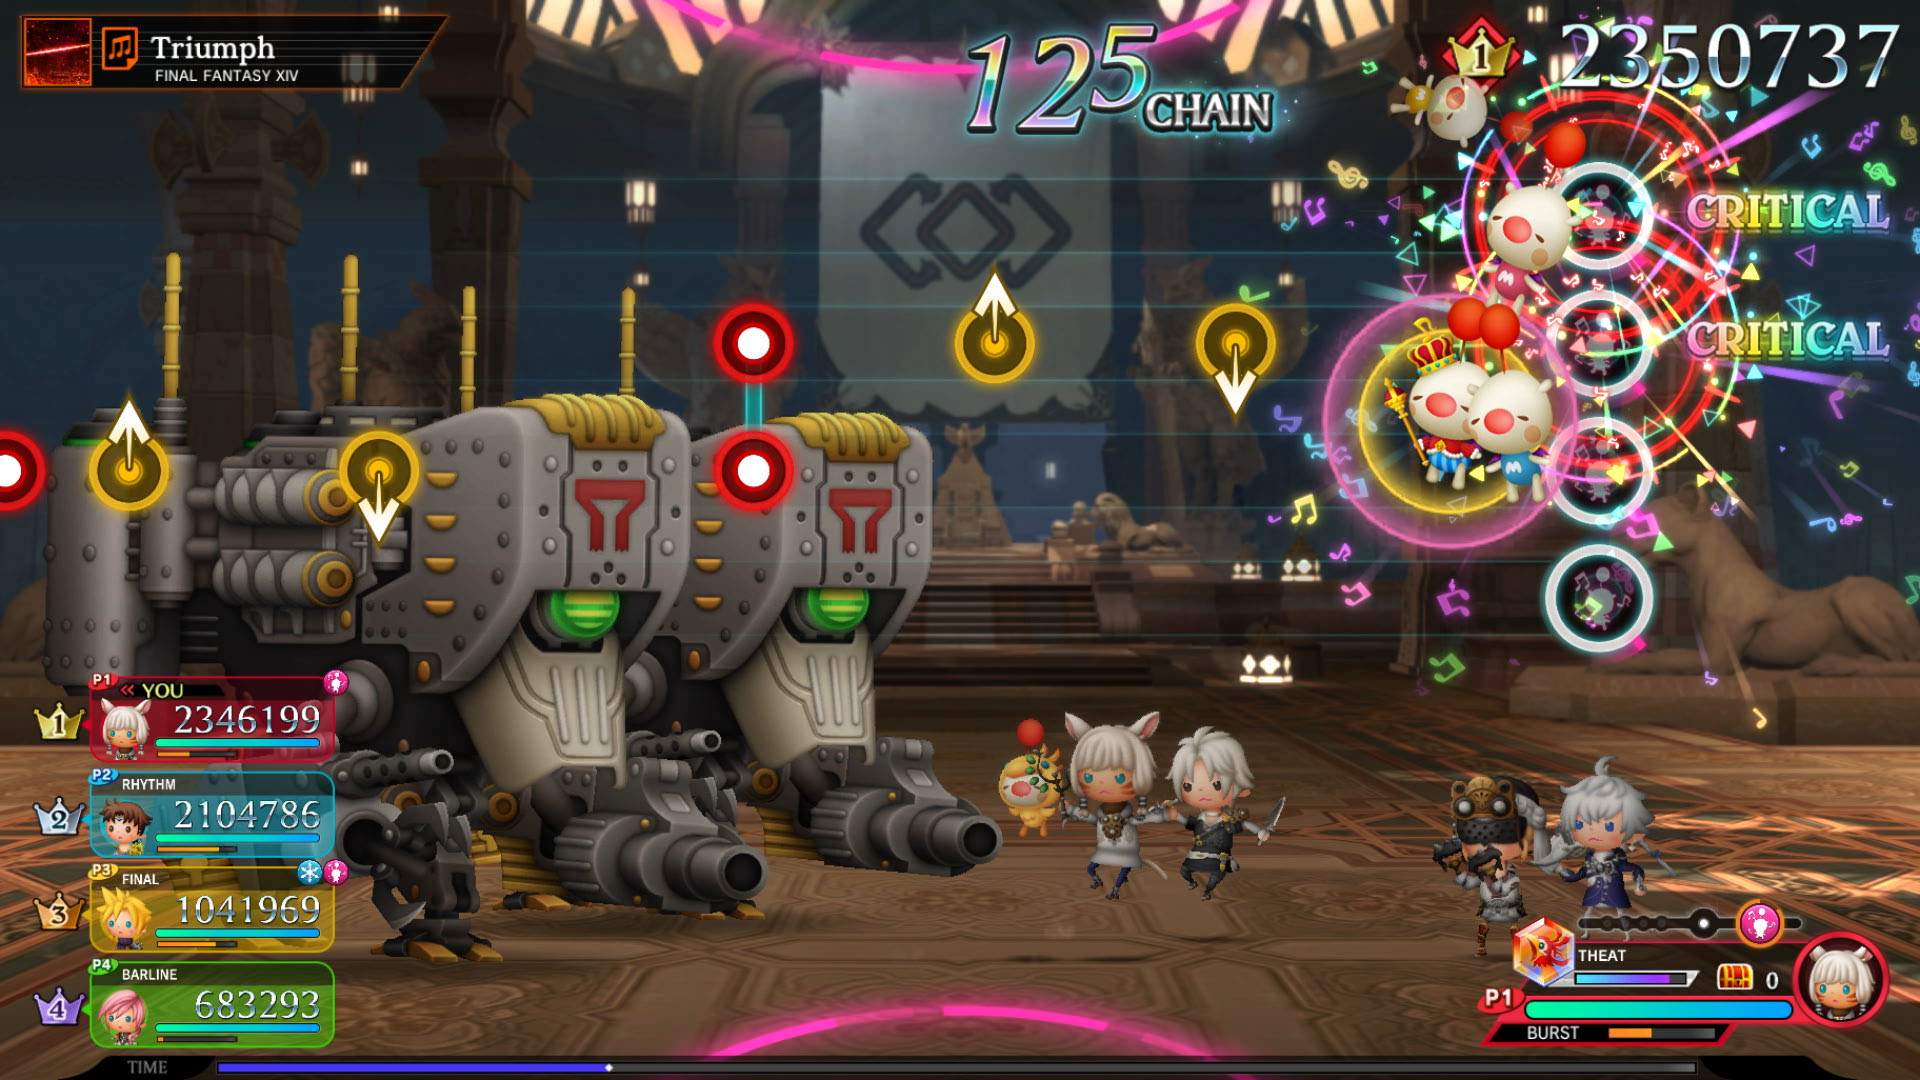 Capture d'écran d'un combat sur la musique de victoire de FINAL FANTASY 14